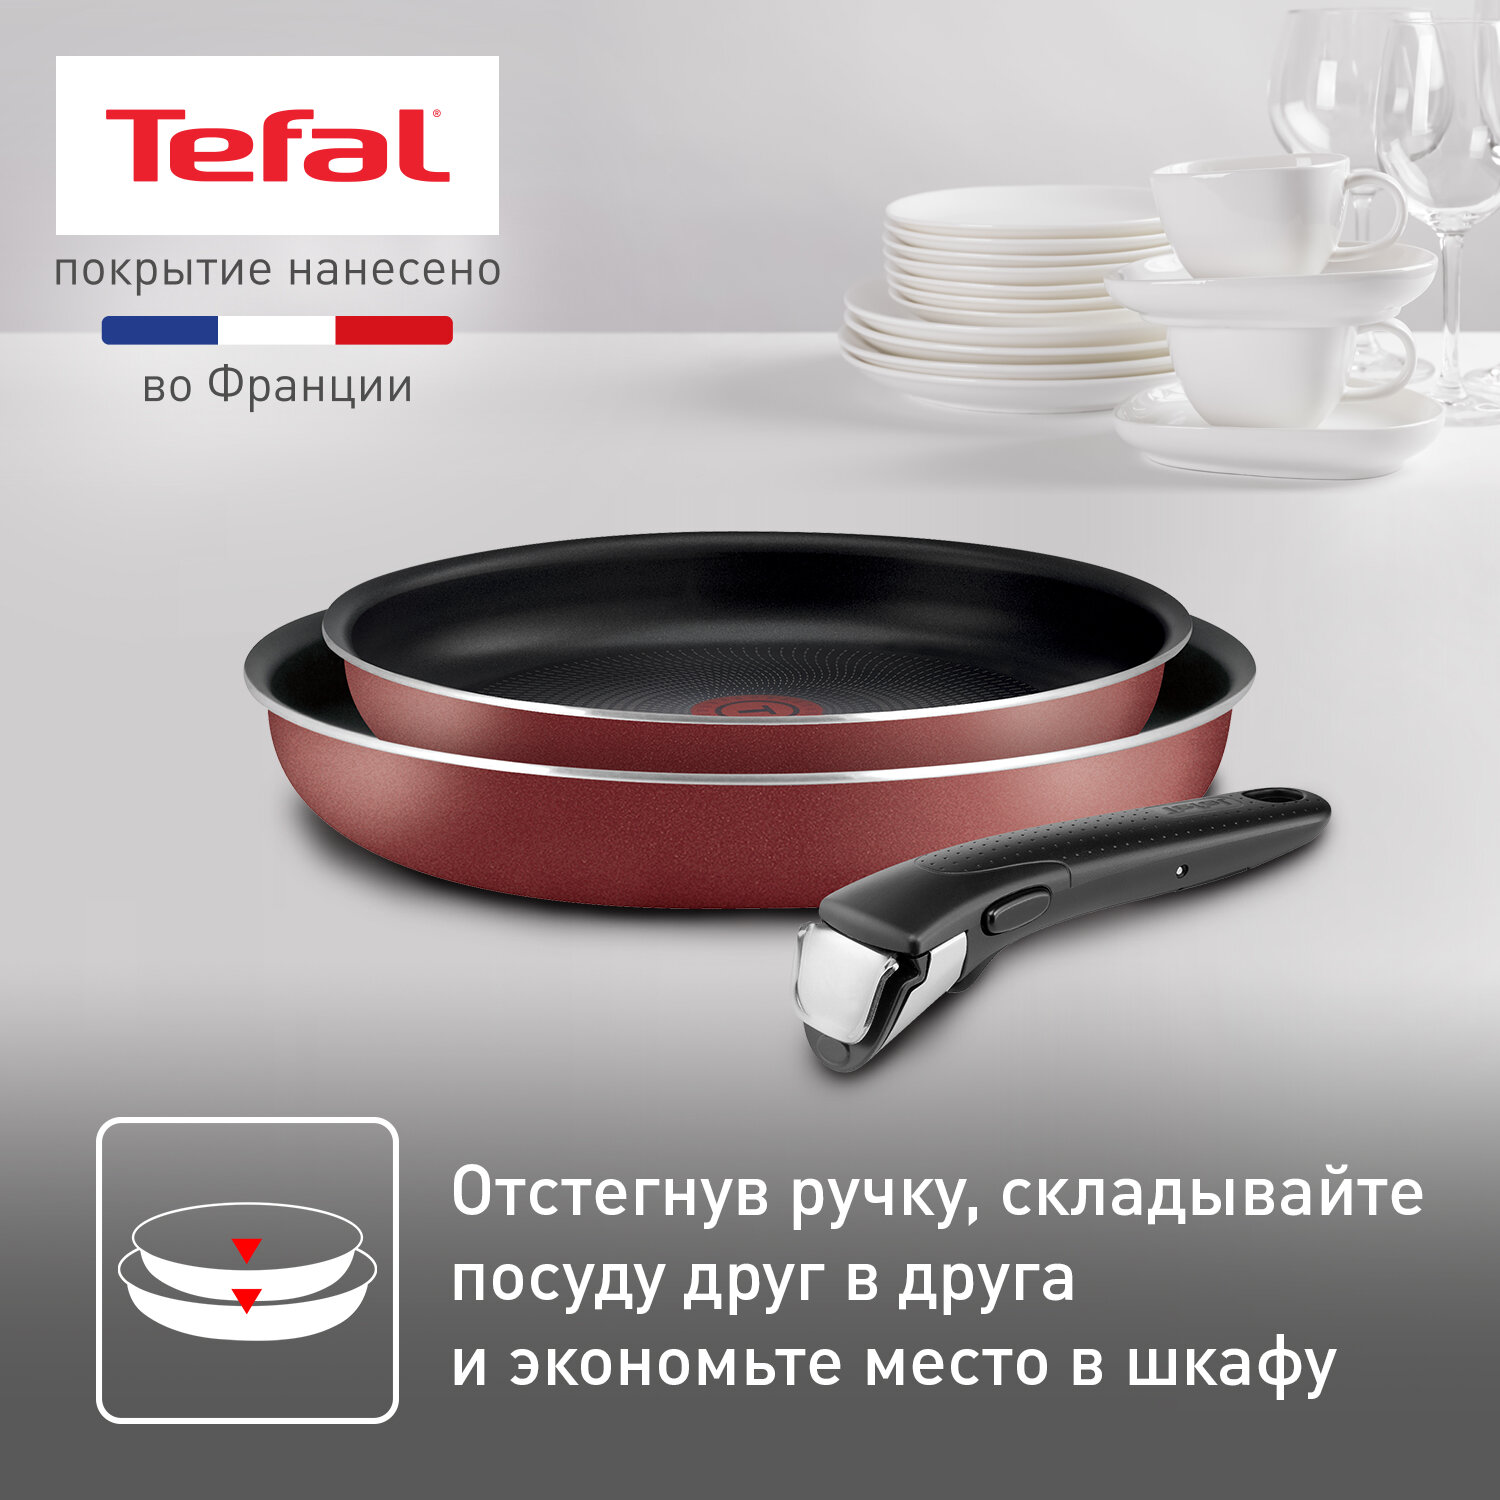 Набор посуды со съемной ручкой Tefal Ingenio RED 5 4175810, диаметр 22/26 см, с индикатором температуры и антипригарным покрытием, для газовых, электрических плит